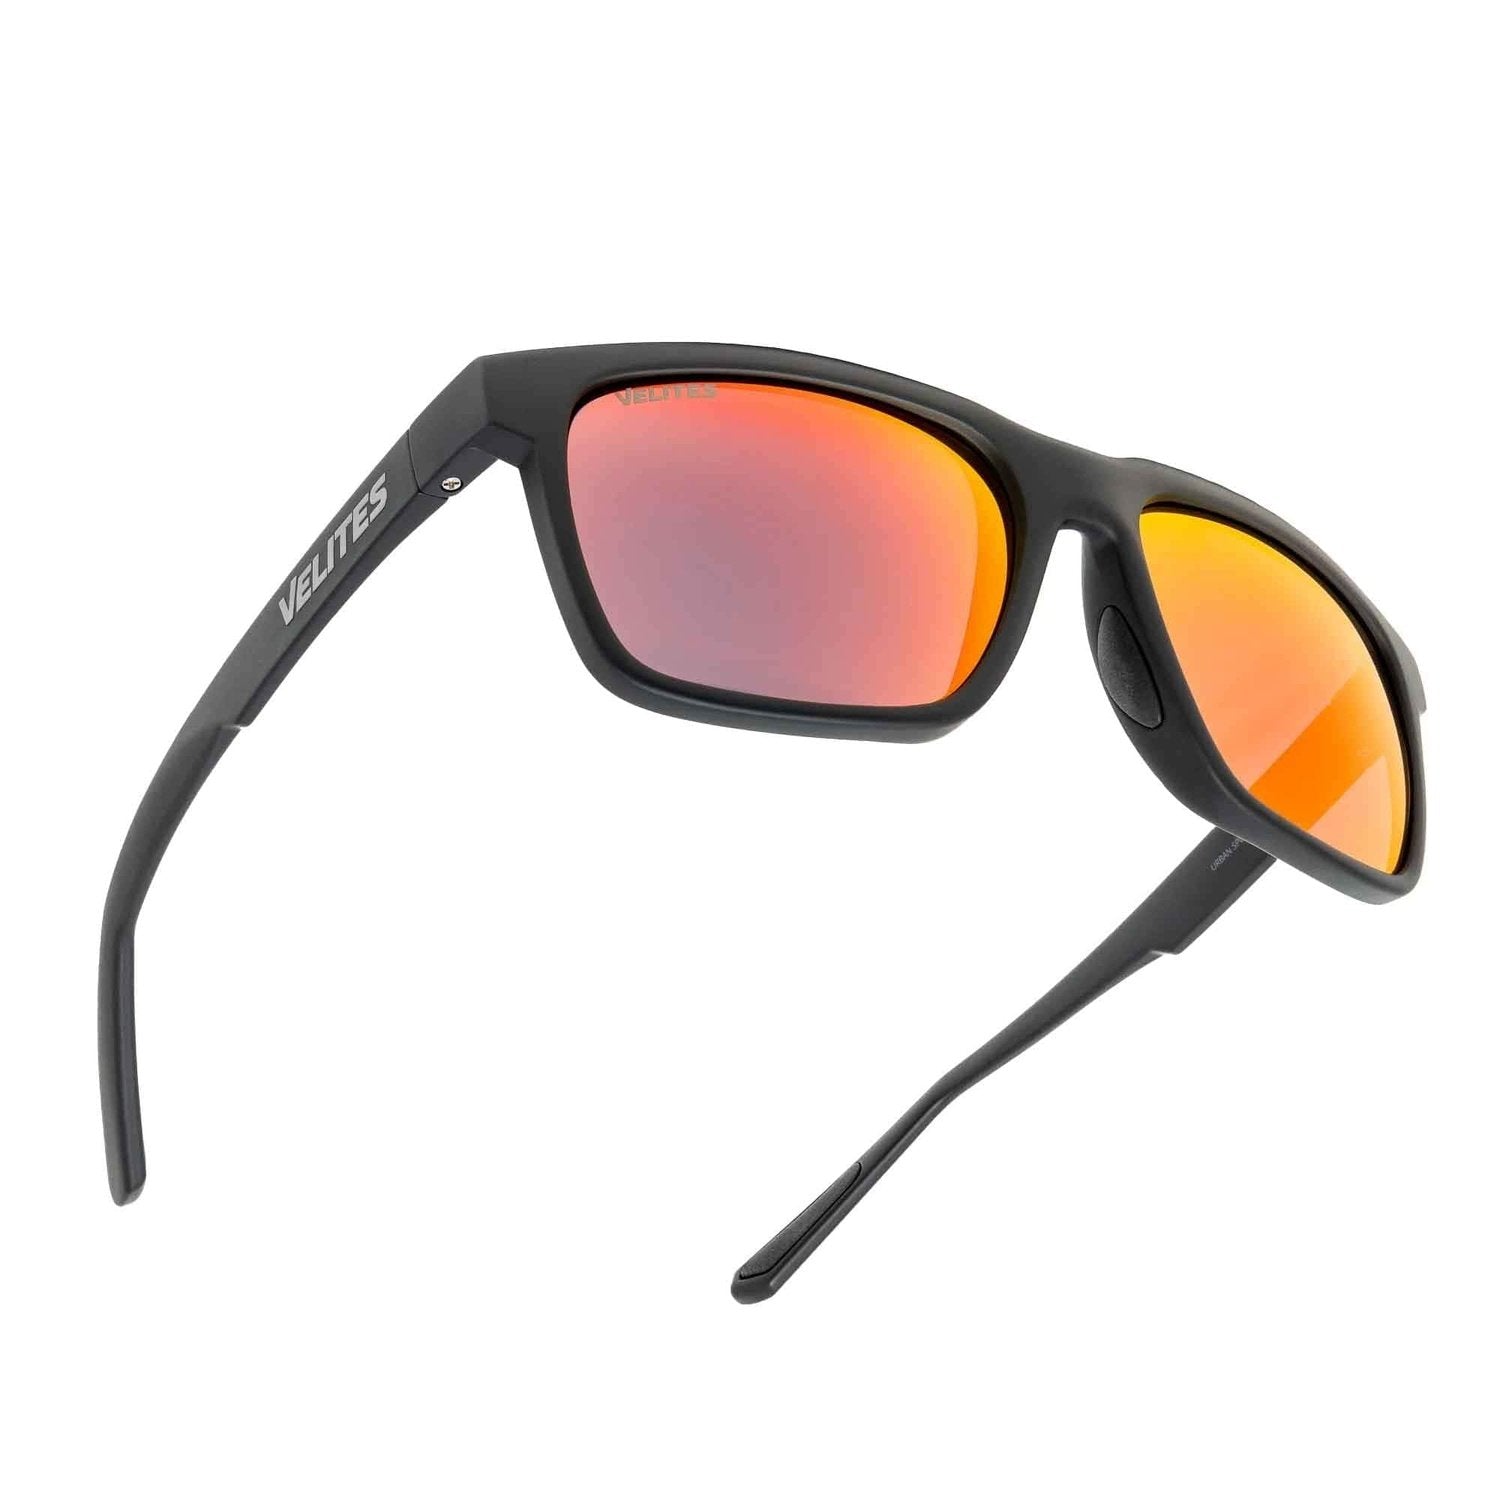 Velites Sonnenbrille "Urban Sport" Schwarz Orange kaufen bei HighPowered.ch